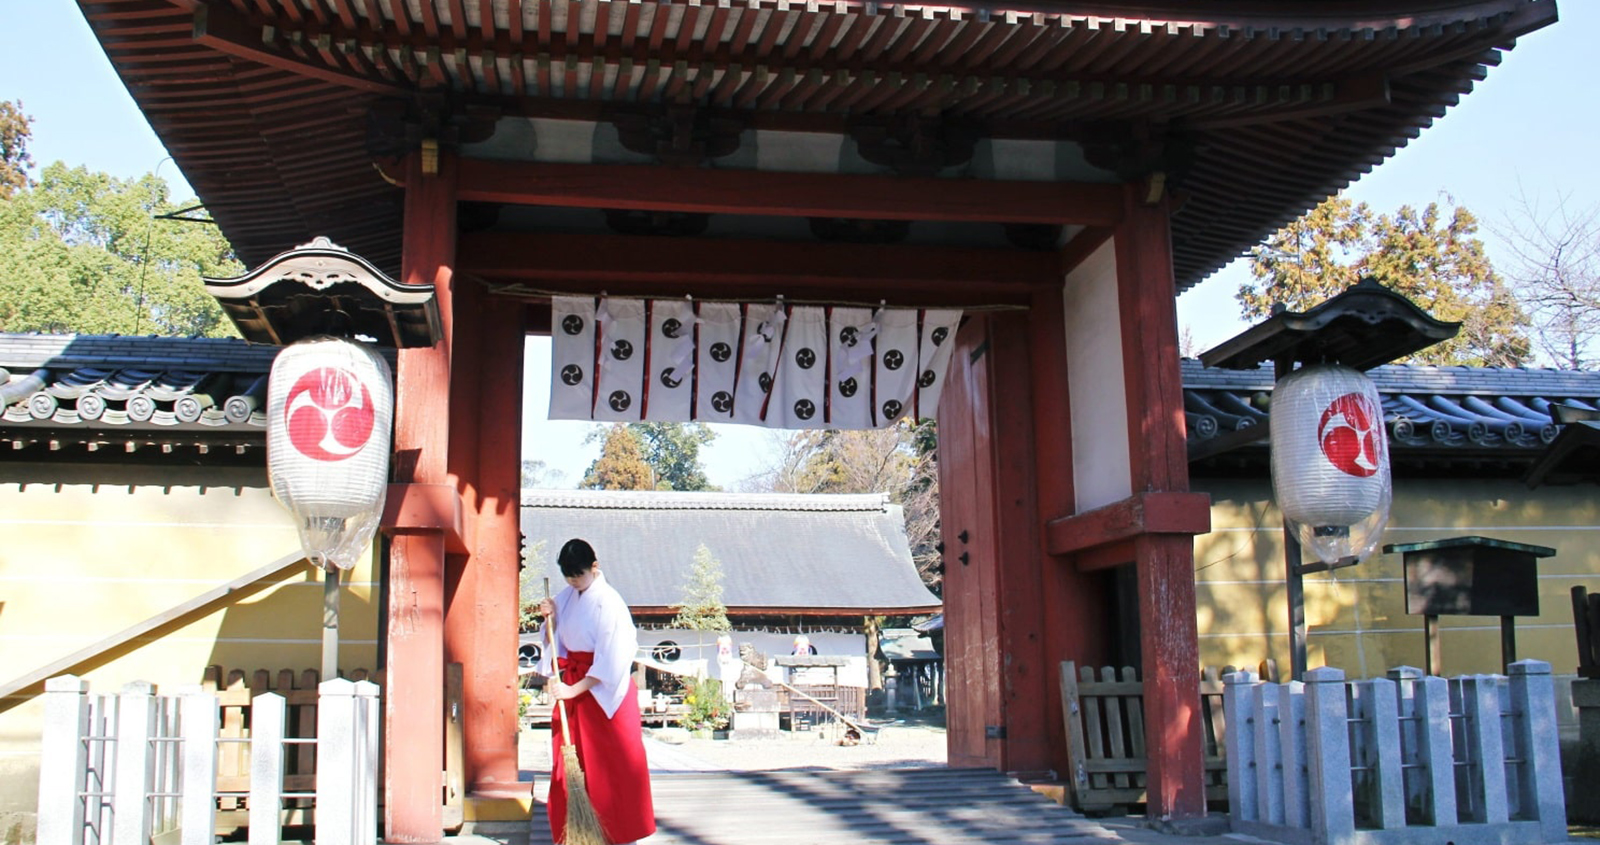 豊満神社の門前の写真と巫女が掃除している写真